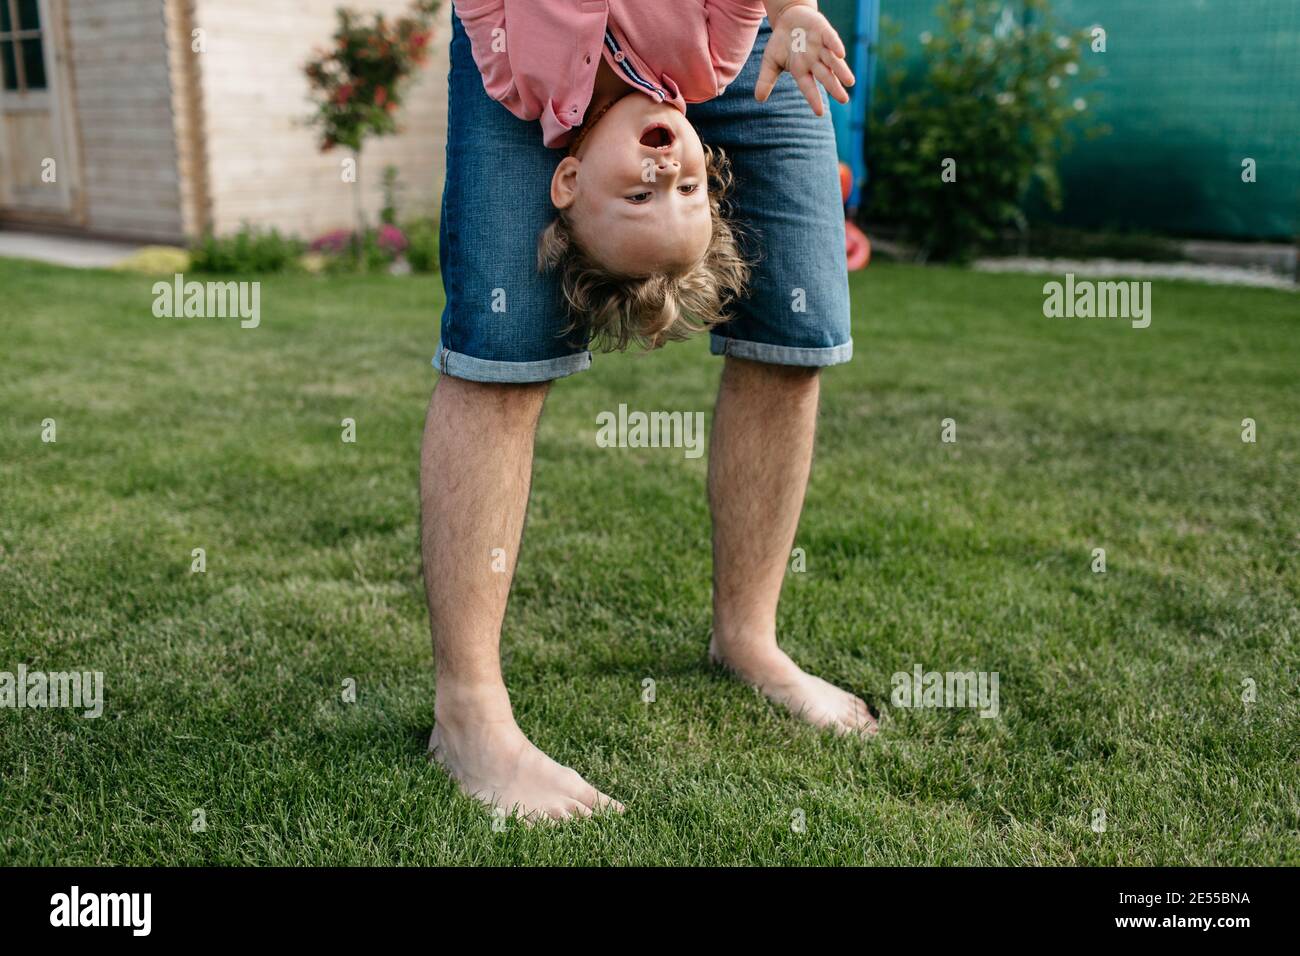 Vater spielt mit seinem Sohn draußen im Garten. Glückliches Kind, das Spaß mit seinem Vater hat. Stockfoto